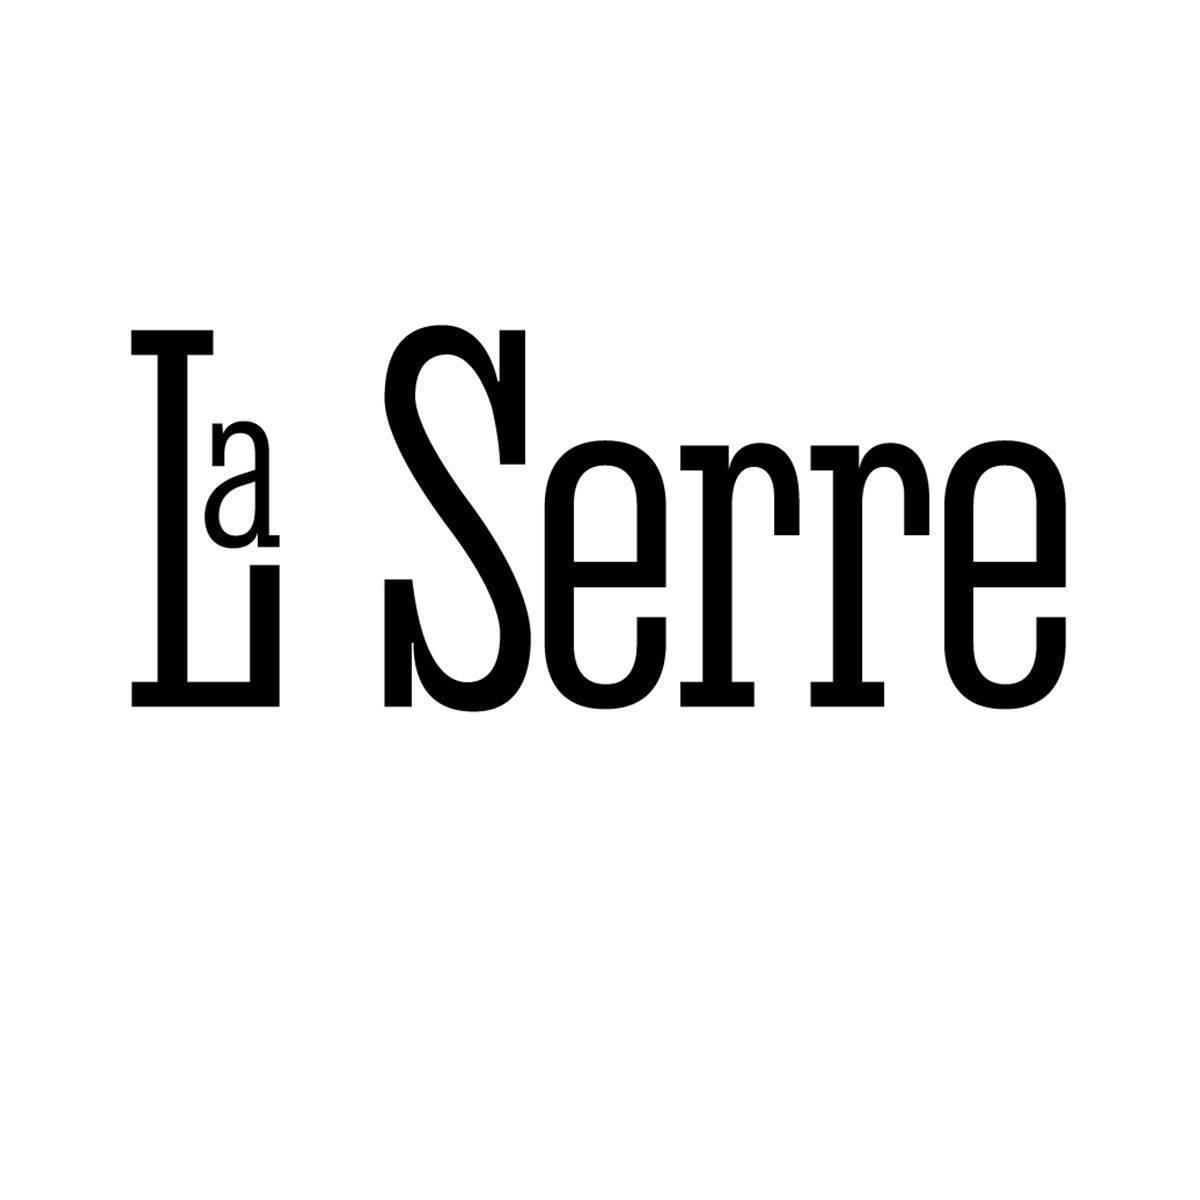 La Parisienne at La Serre